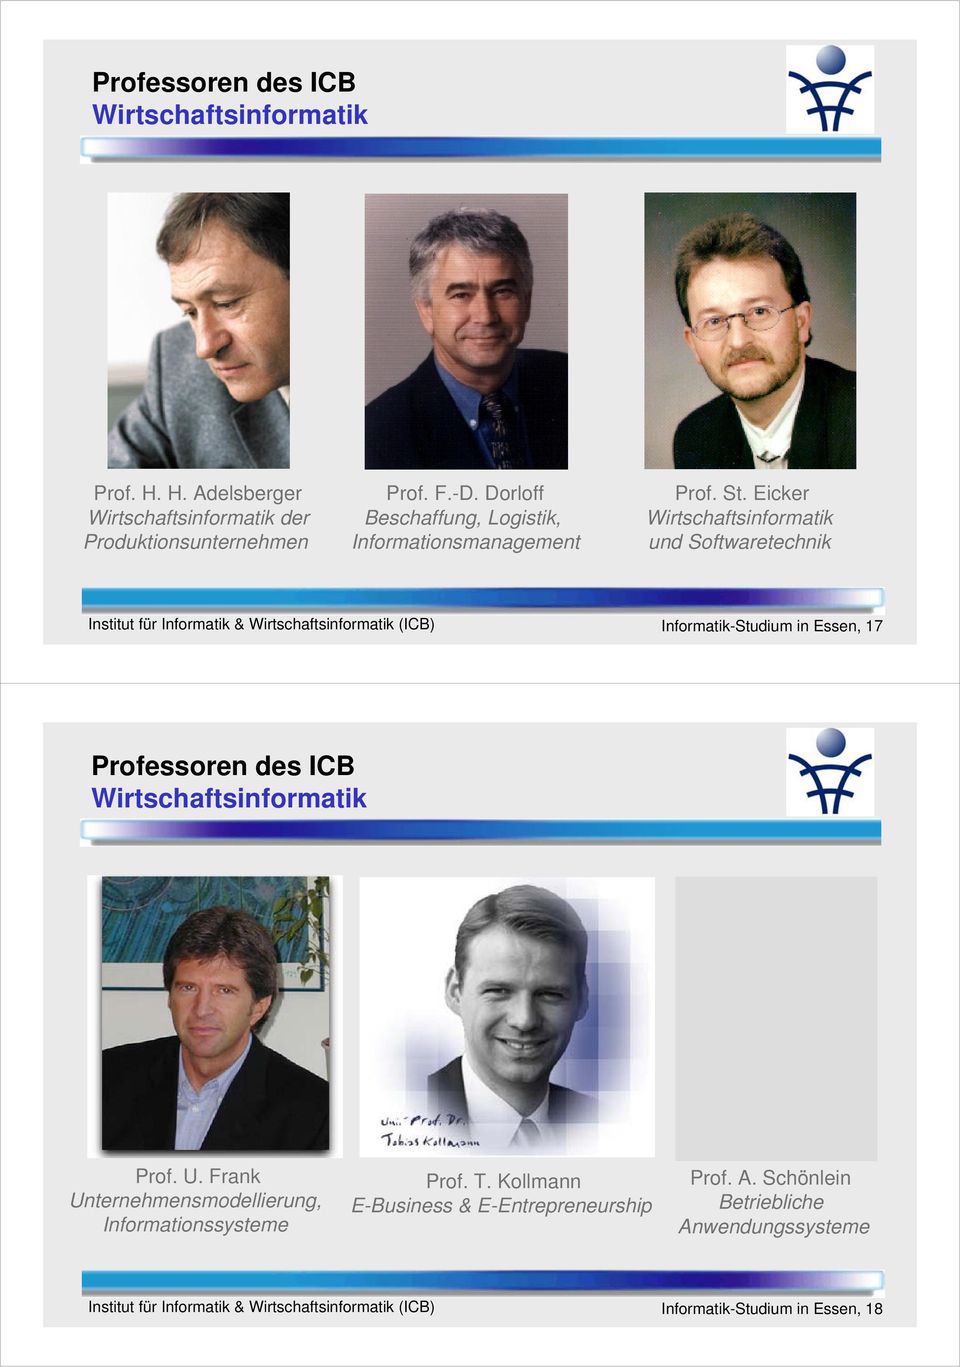 Eicker Wirtschaftsinformatik und Softwaretechnik Informatik-Studium in Essen, 17 Professoren des ICB Wirtschaftsinformatik